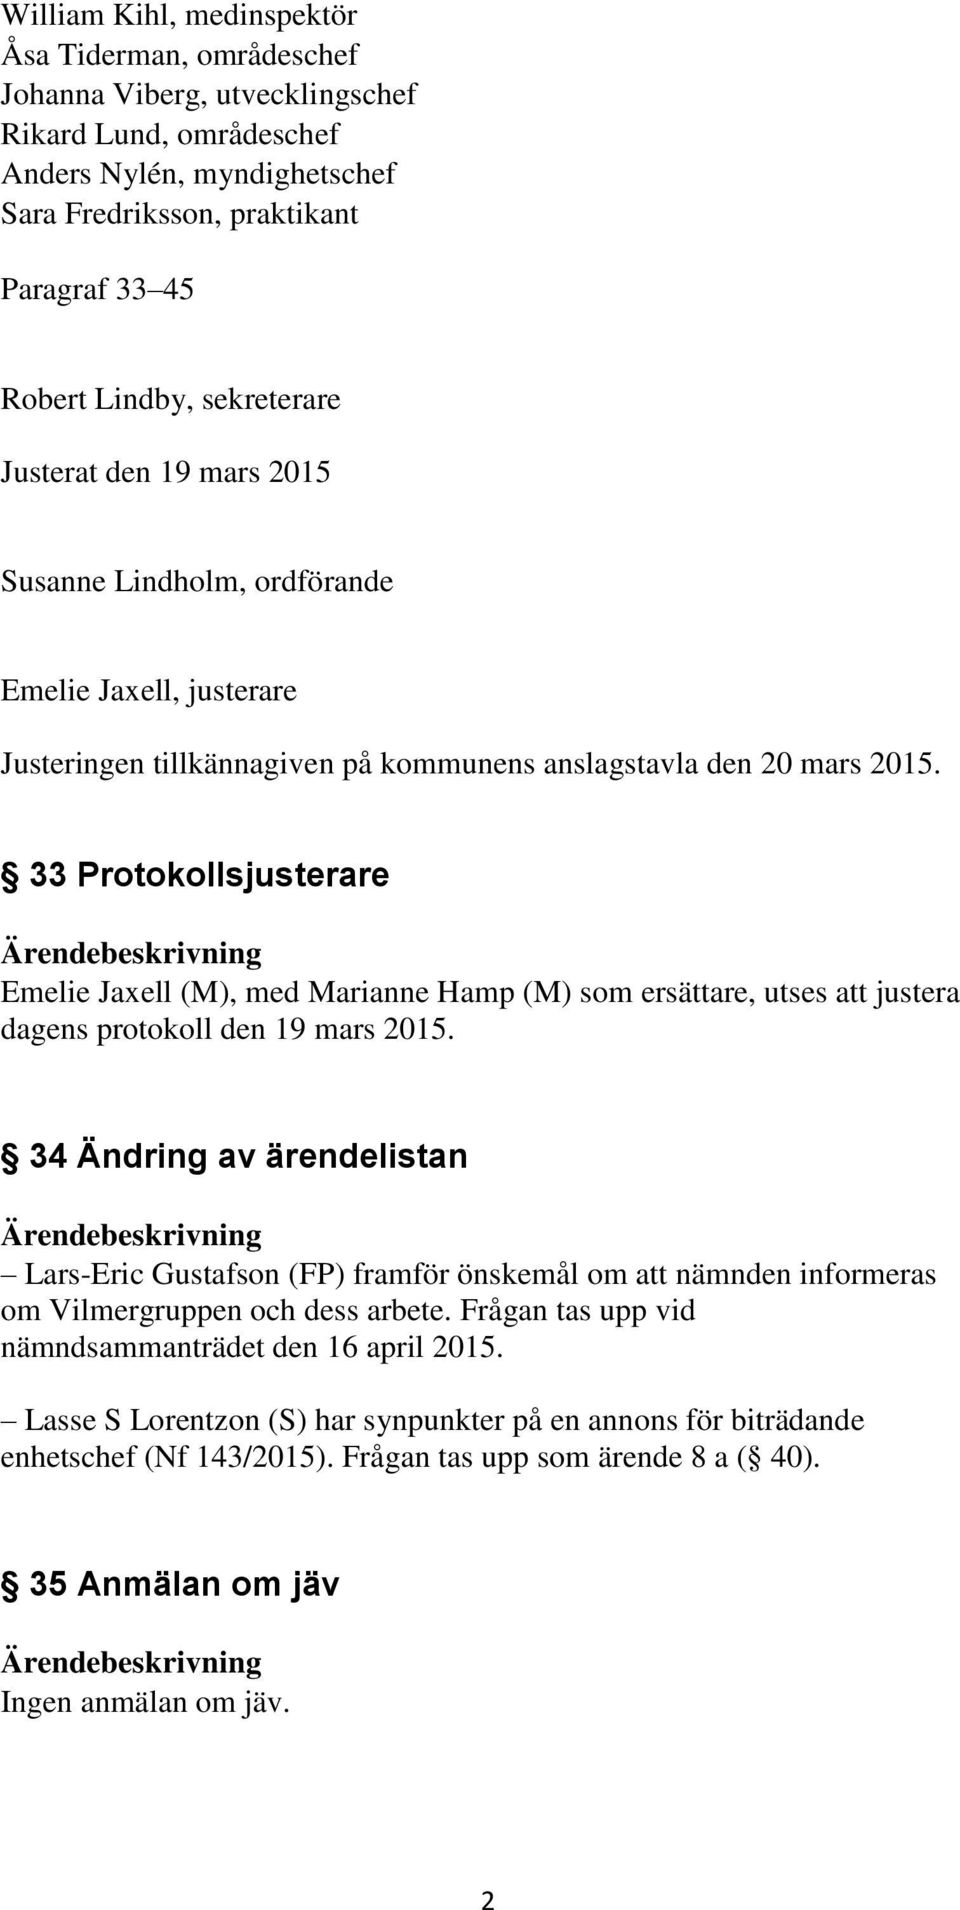 33 Protokollsjusterare Emelie Jaxell (M), med Marianne Hamp (M) som ersättare, utses att justera dagens protokoll den 19 mars 2015.